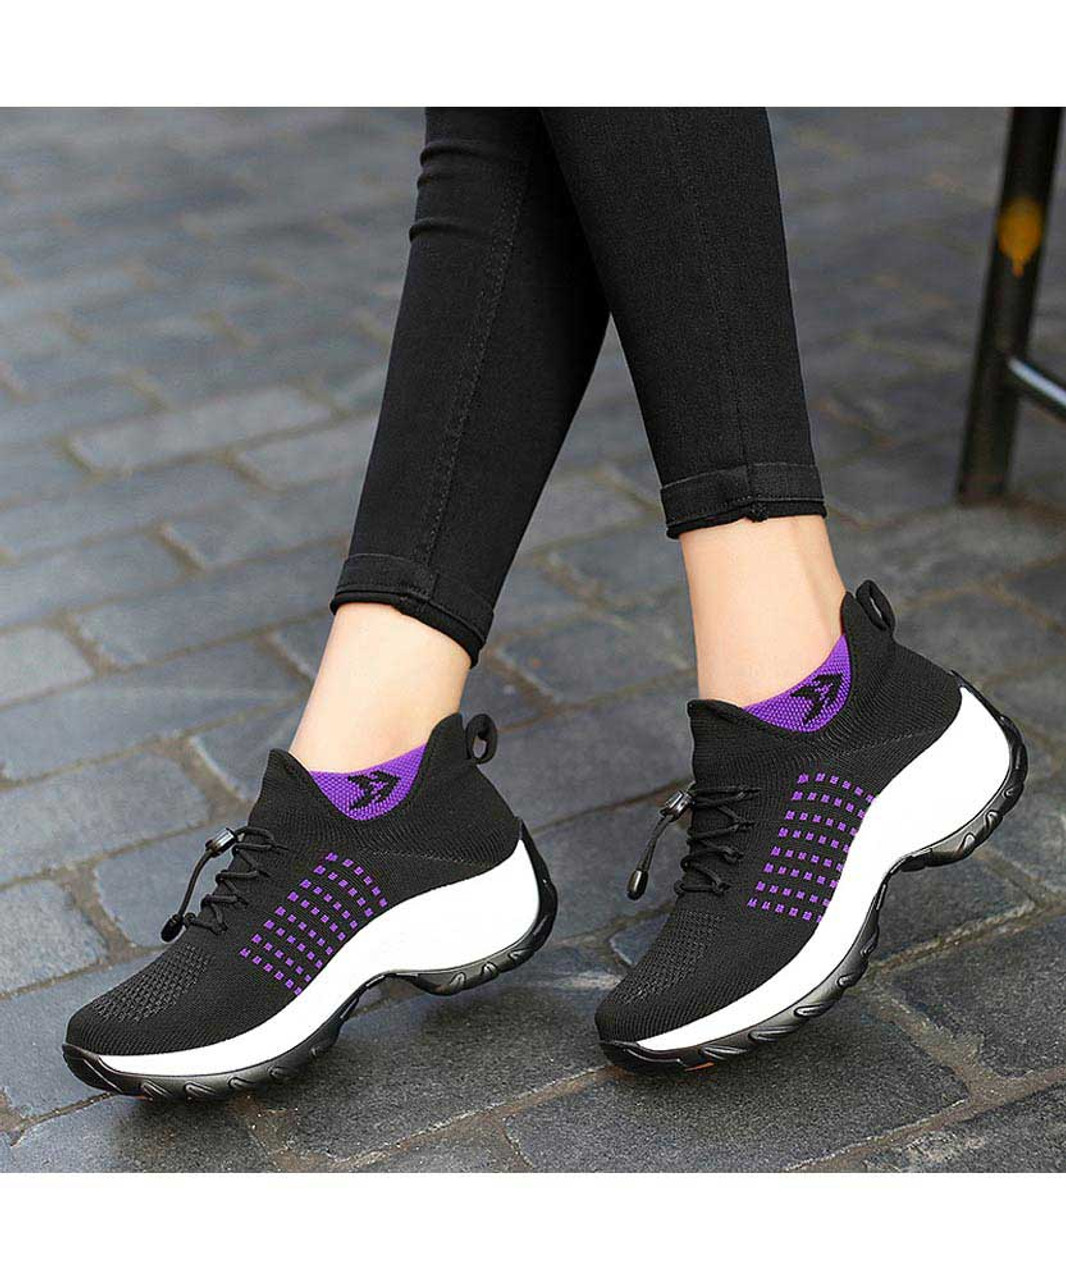 Black pattern double rocker bottom shoe sneaker | Womens rocker shoes ...